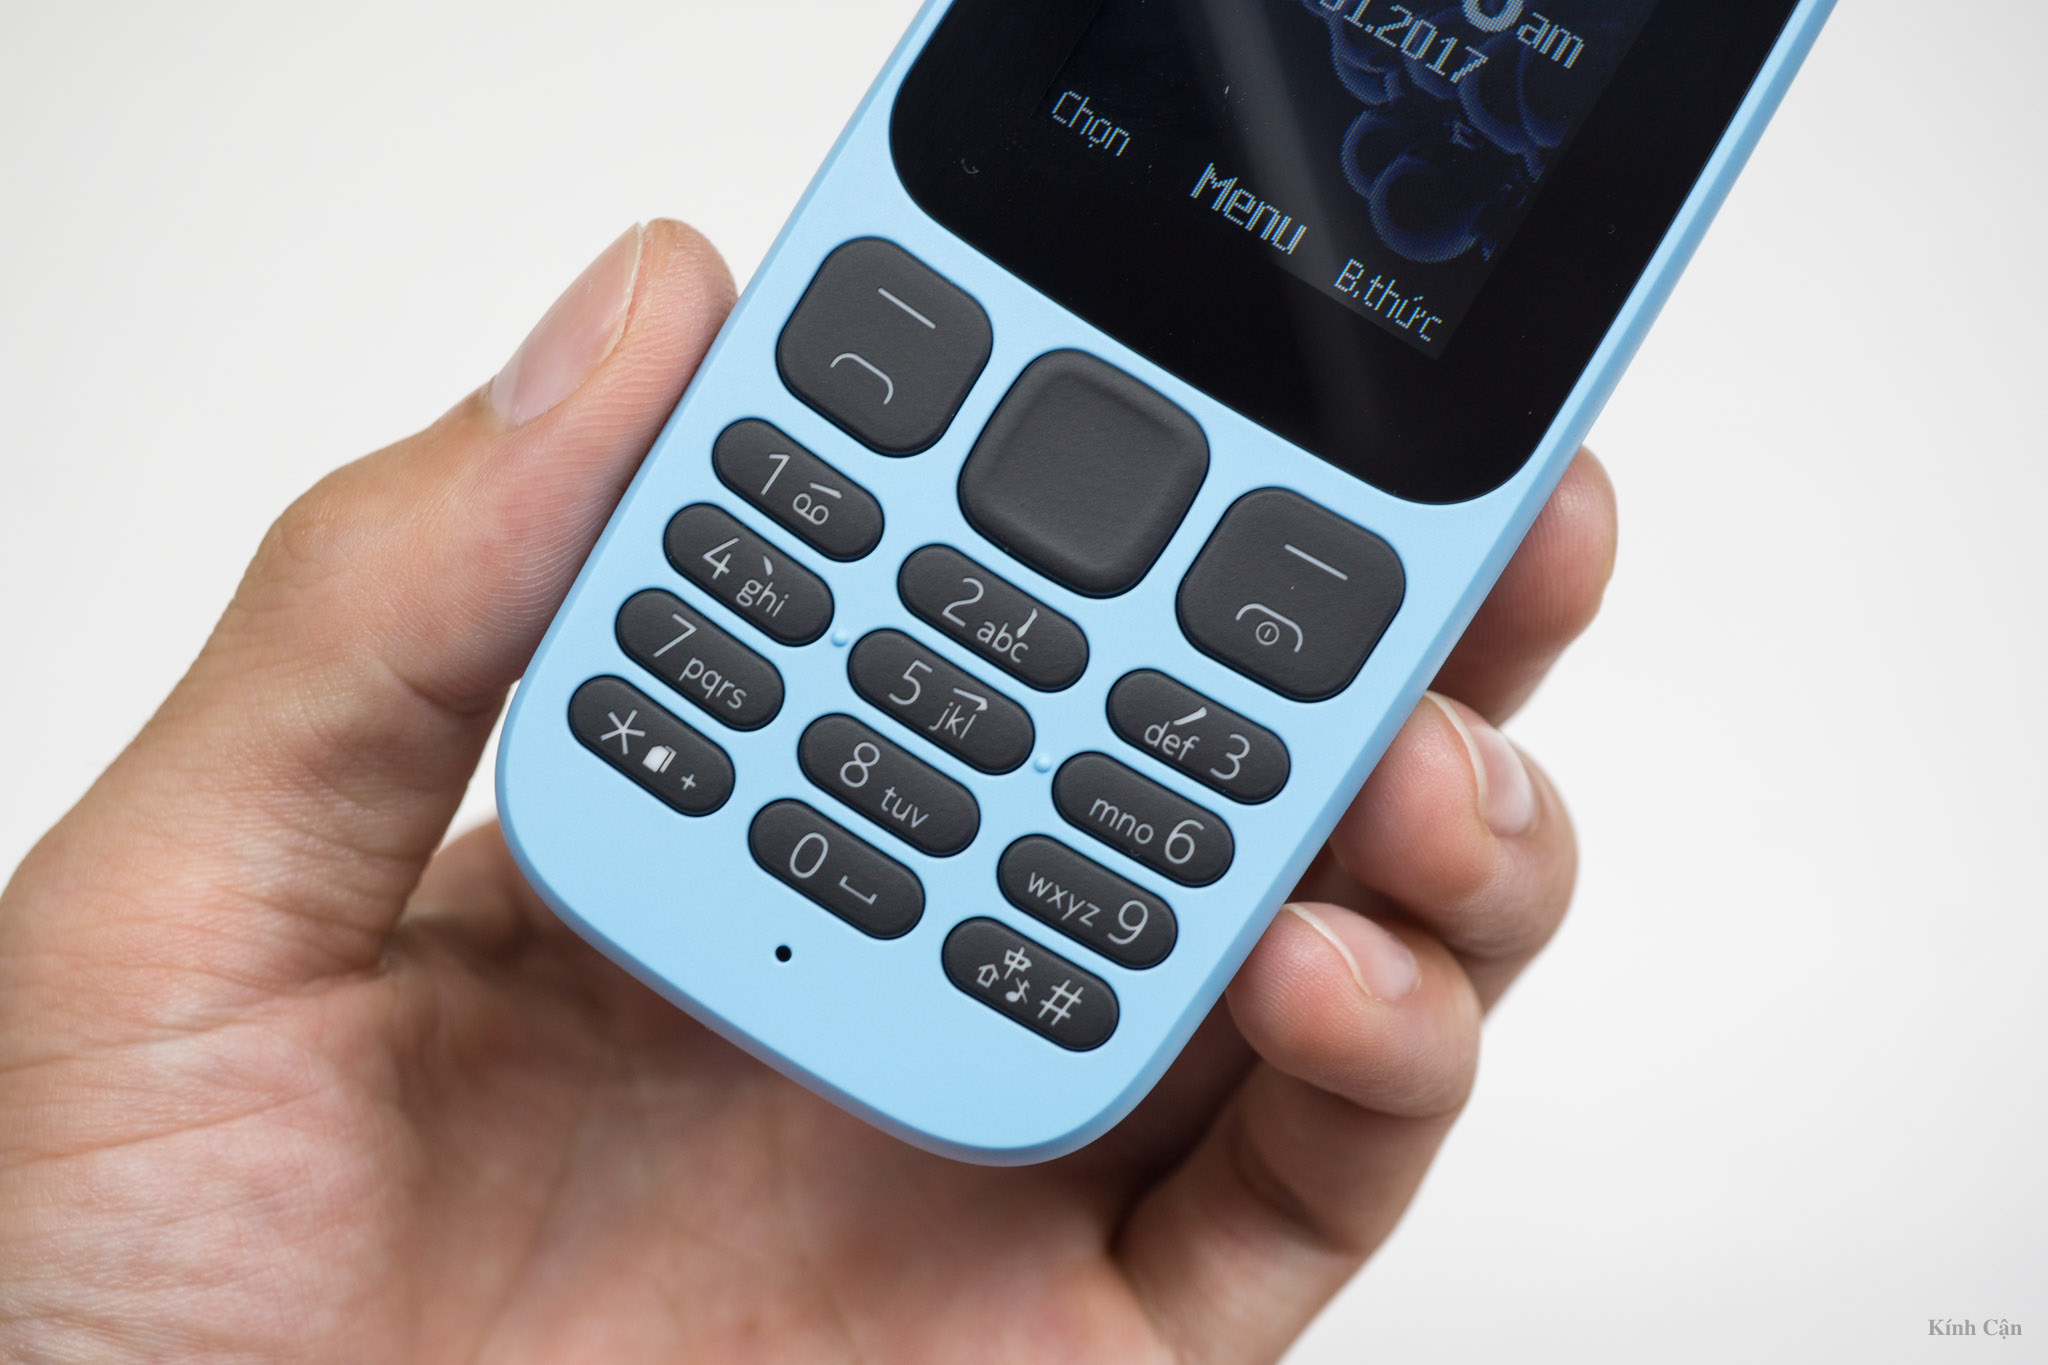 Nokia 105 Dual SIM (2017): Nokia 105 Dual SIM (2017) là lựa chọn hoàn hảo cho những người tìm kiếm một chiếc điện thoại vừa túi tiền vừa đảm bảo tính năng. Với thiết kế nhỏ gọn, tính năng đa dạng và đa sim, Nokia 105 Dual SIM (2017) sẽ là người đồng hành lý tưởng cho bạn.